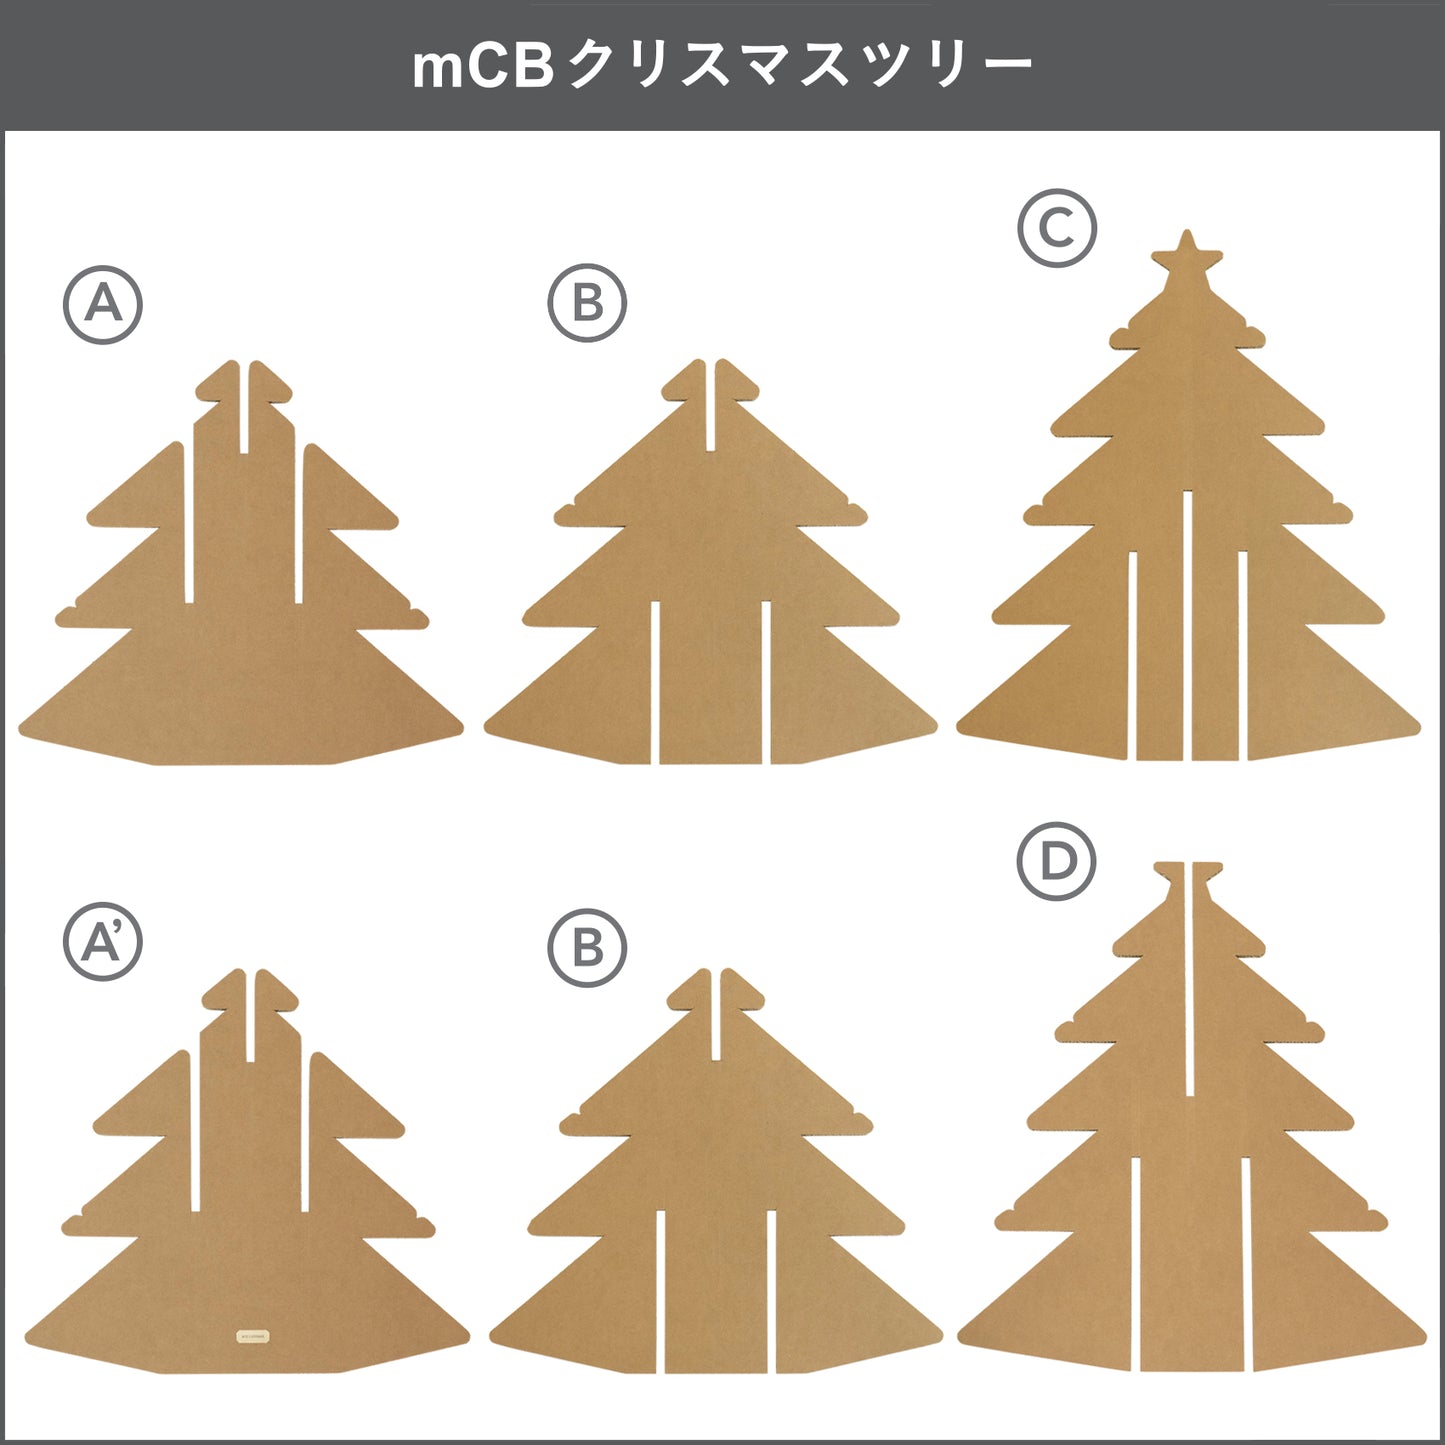 mCBクリスマスツリーは「お客様組立商品」です。 詳しい組立方法は、商品に同梱されている〈お取扱マニュアル-製品組立ガイド〉をご一読ください。 ブログ(組立ガイド)でもご覧いただけます。